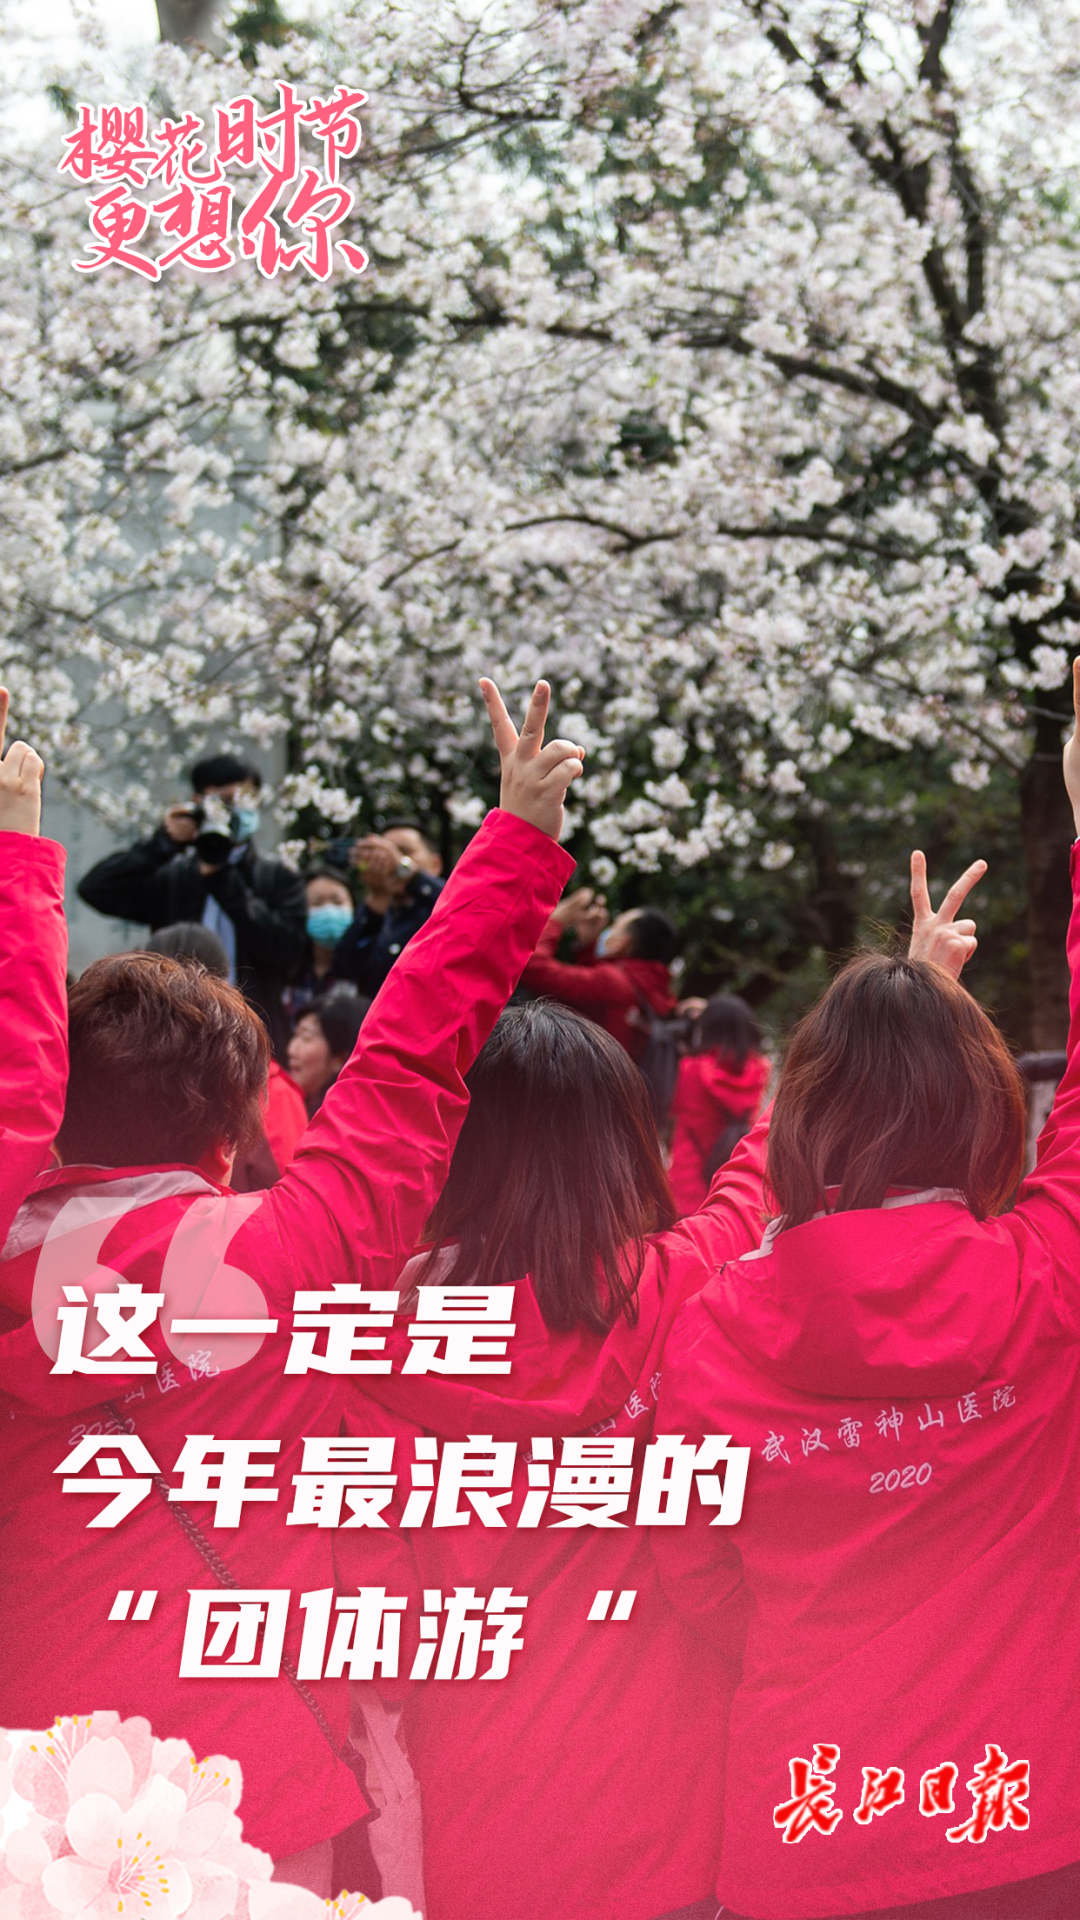 刚刚，武汉这场樱花之约冲上热搜！